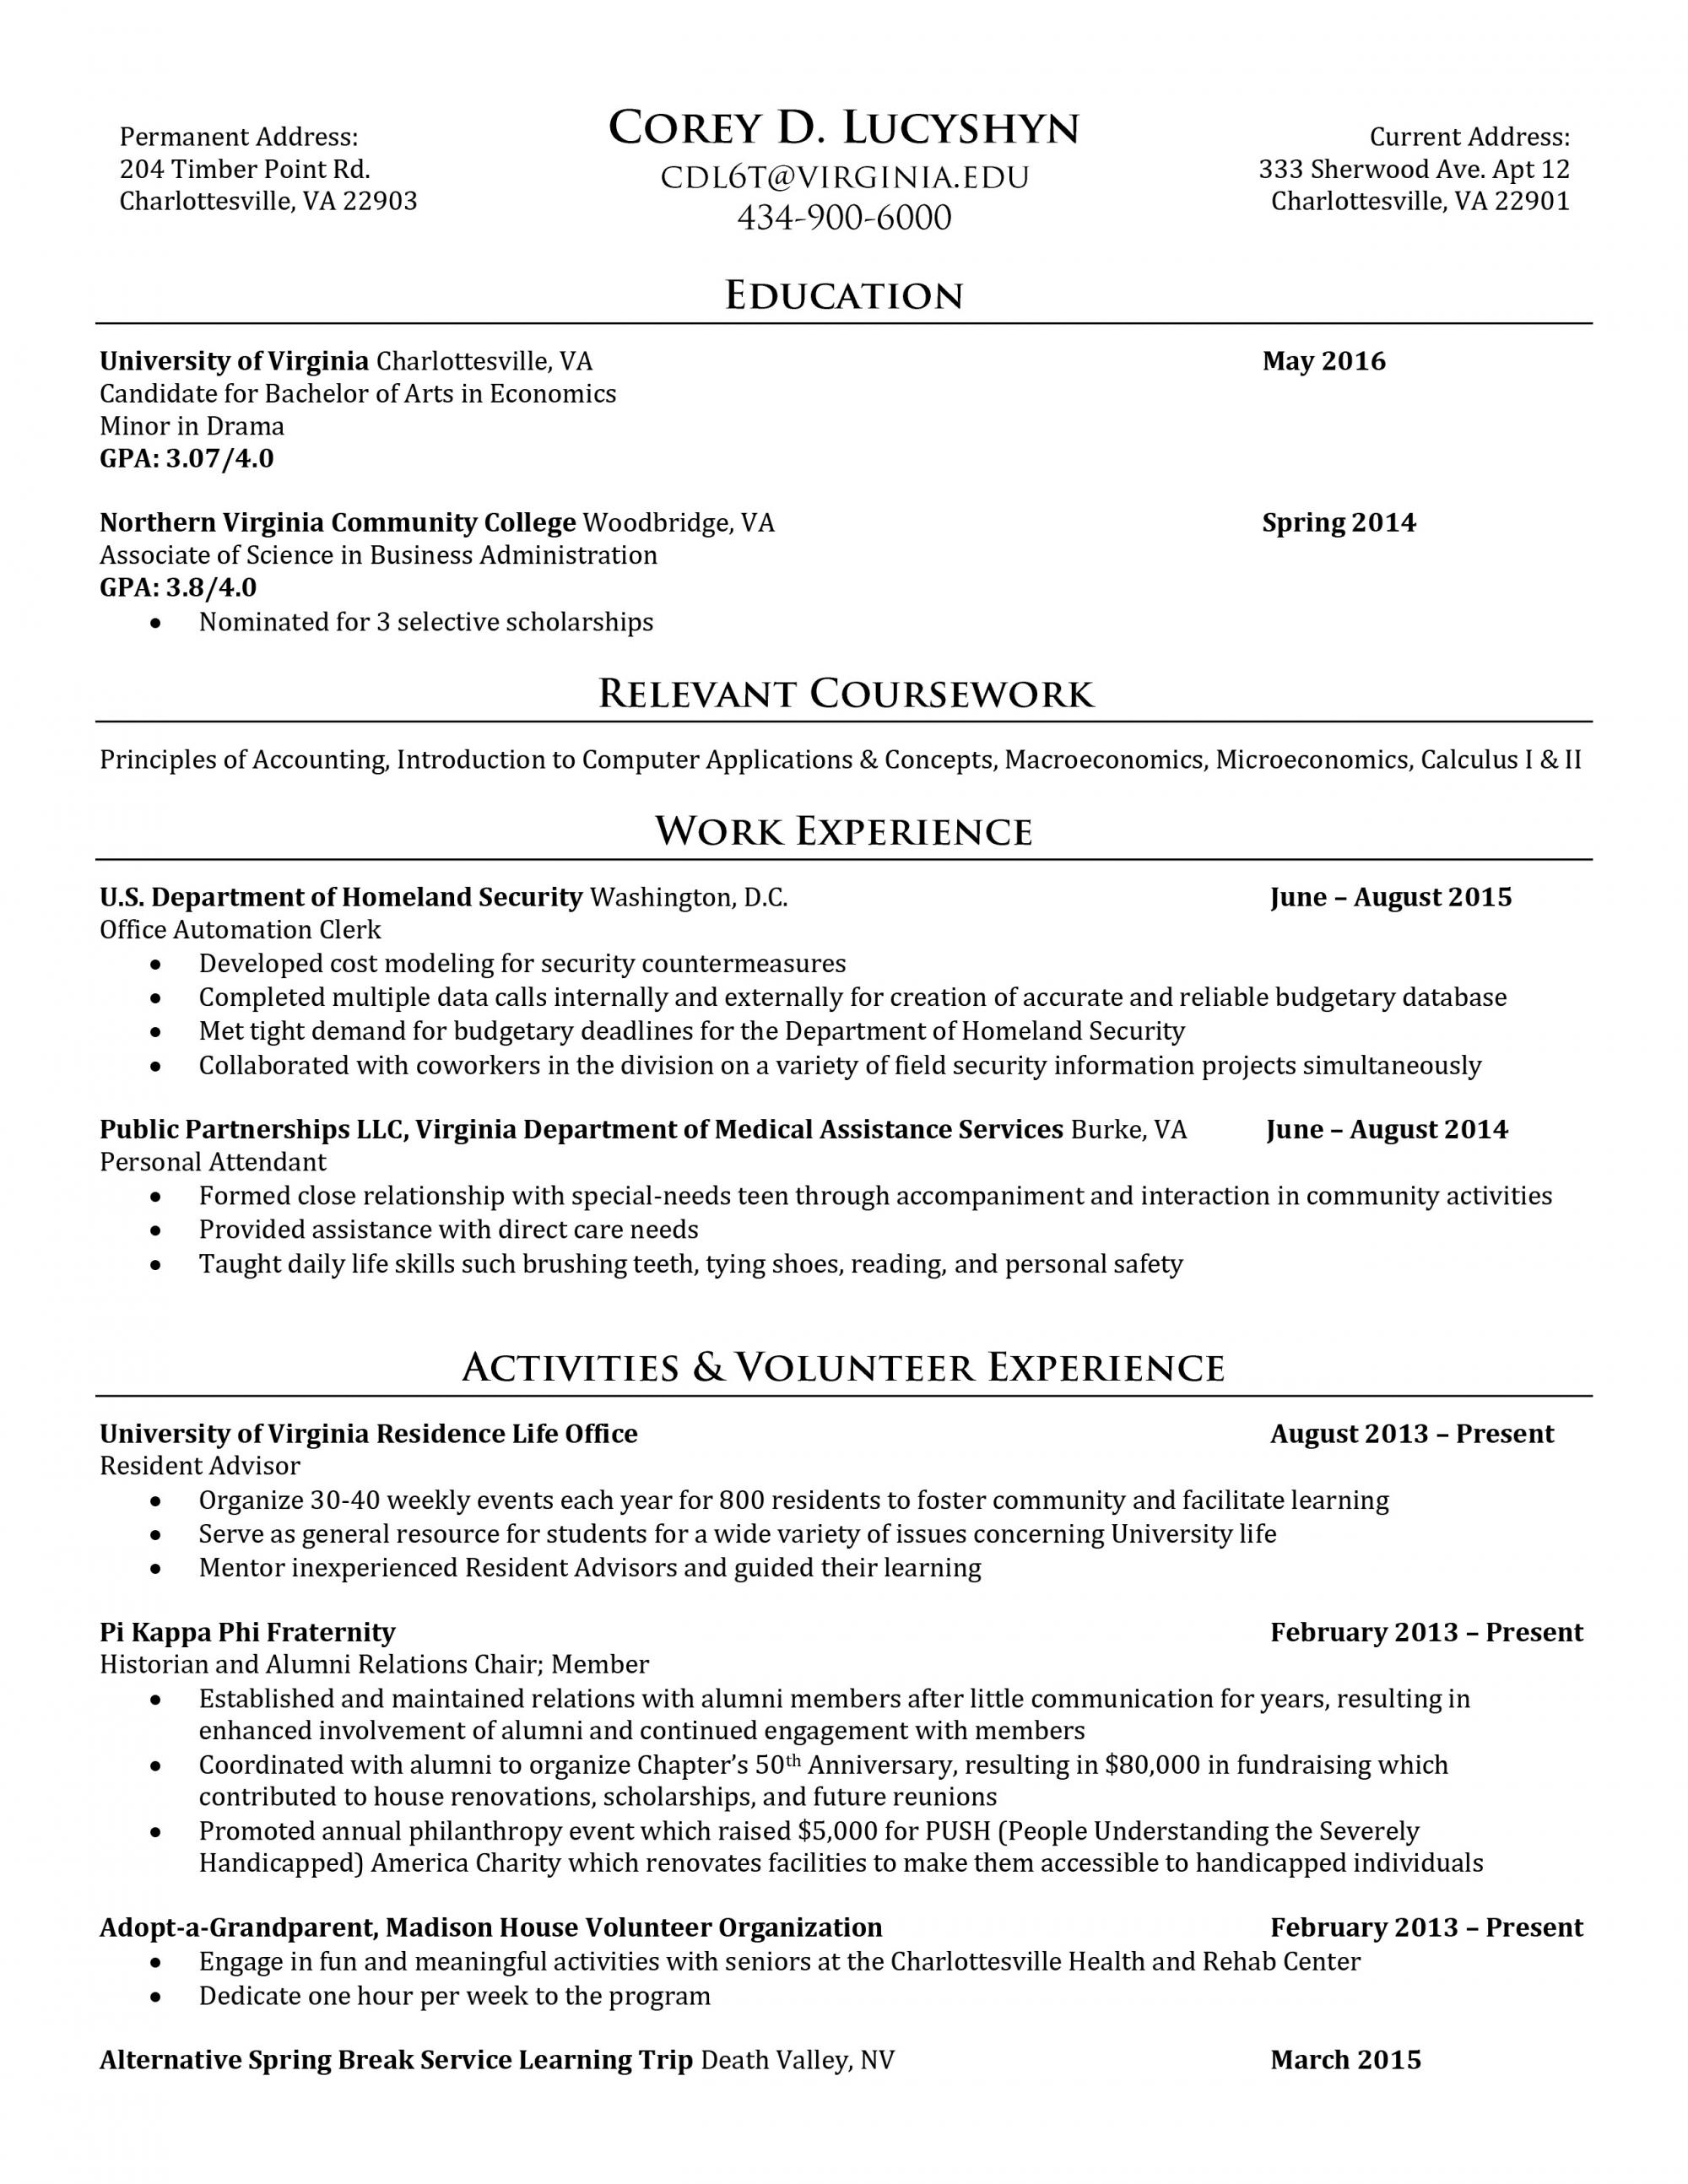 resume samples uva career center